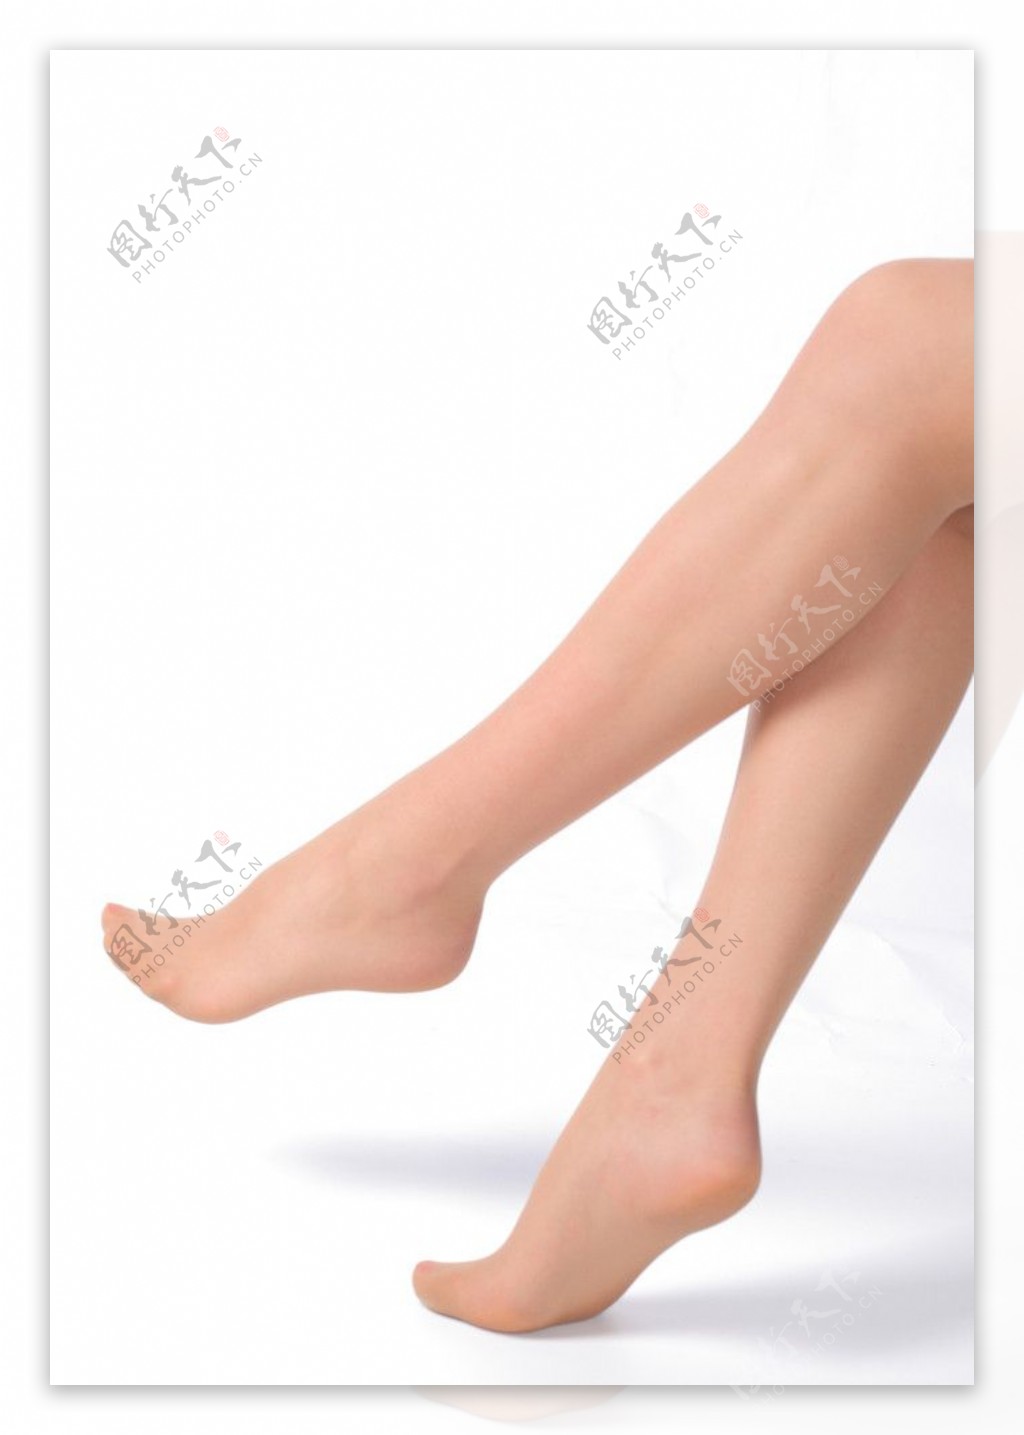 性感美腿图片